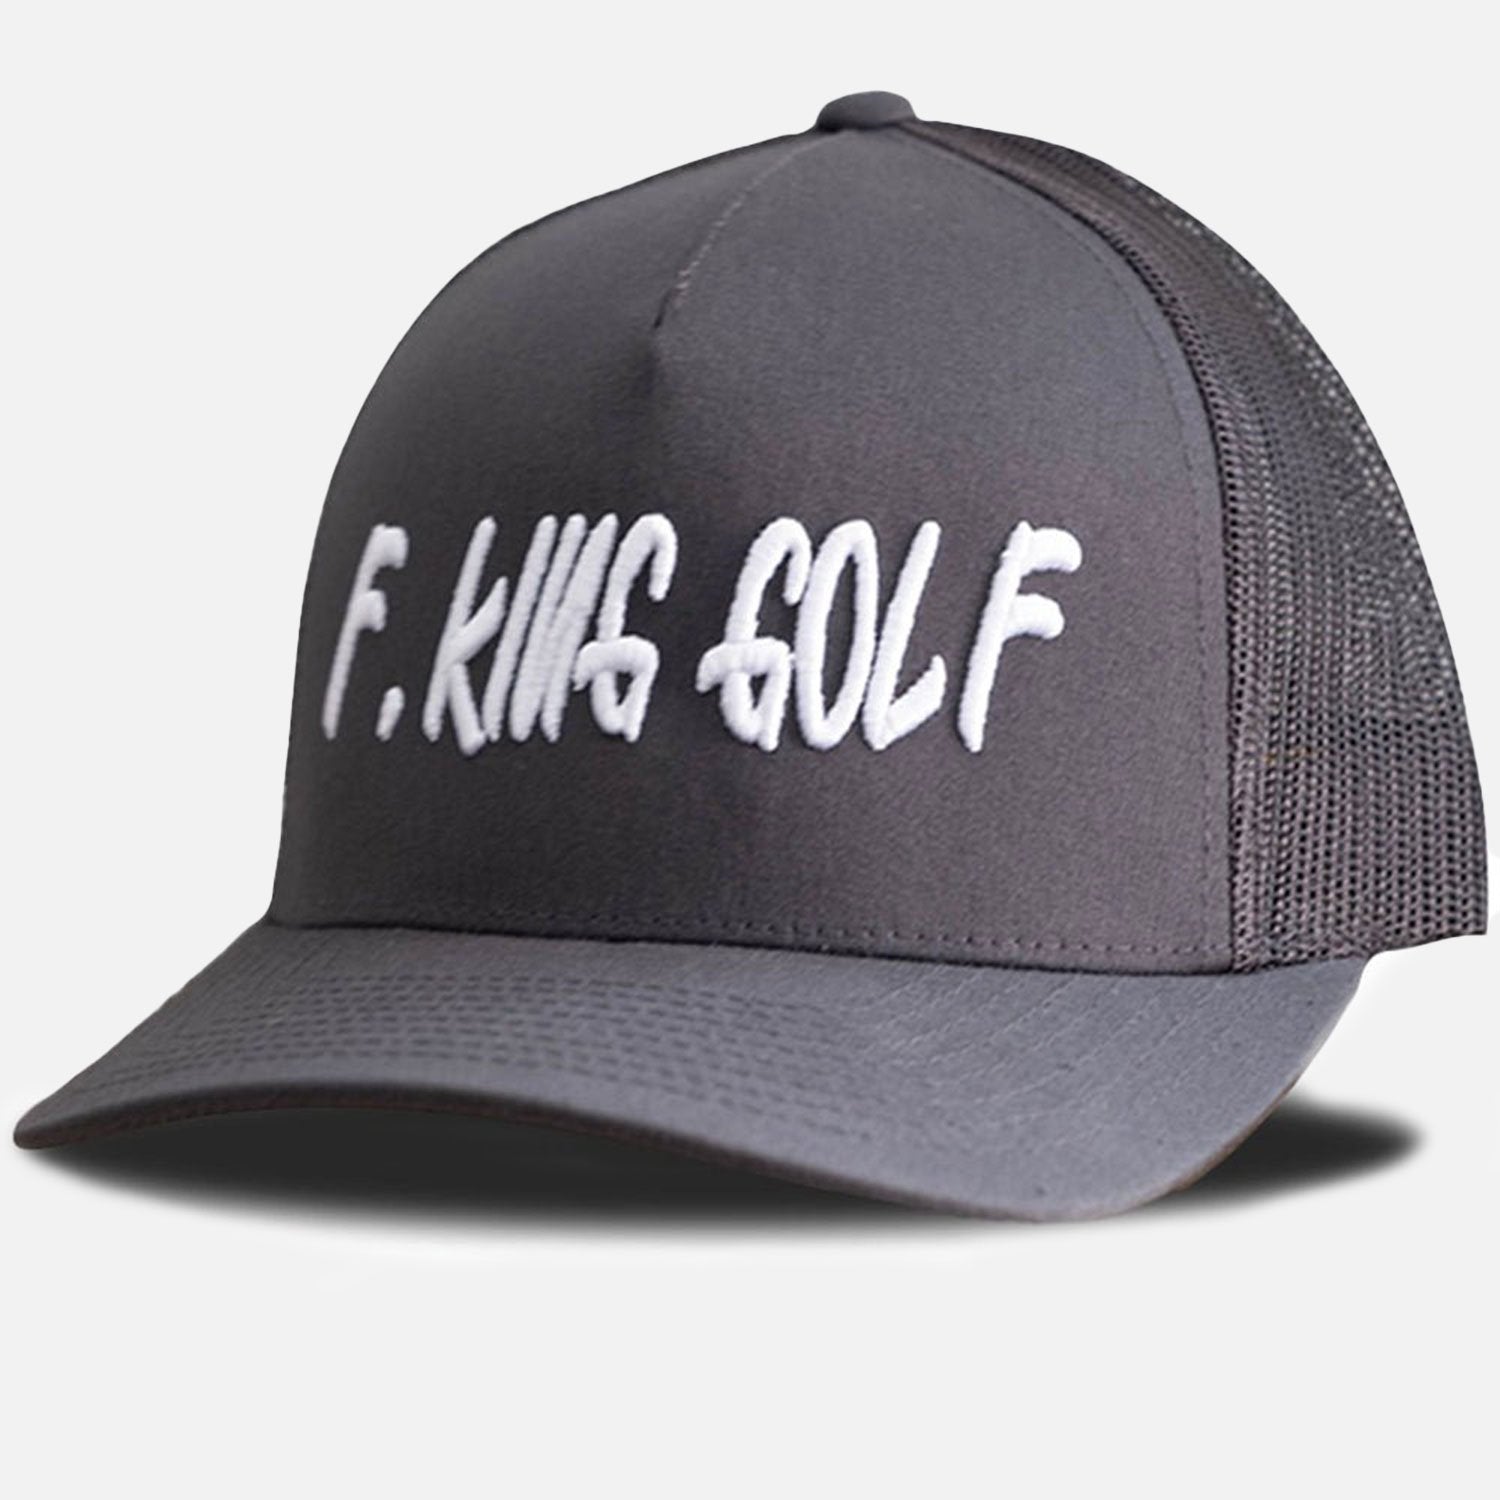 F. King Golf Hat - F. King Golf